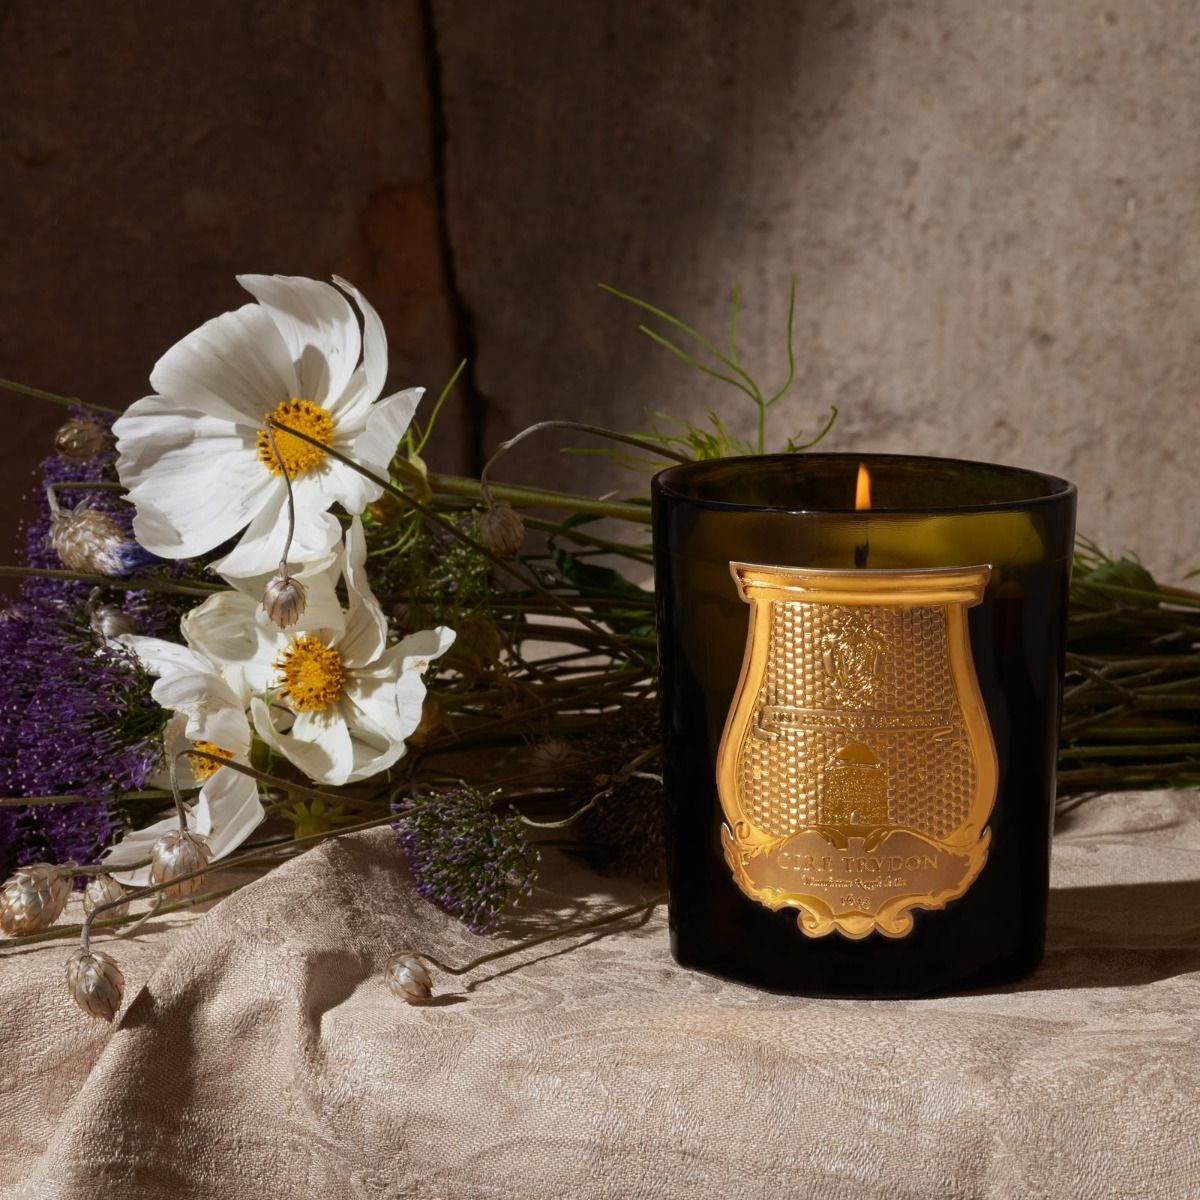 NEW Cire Trudon Abd El Kader Gold Leaf Amber Candle 270g 